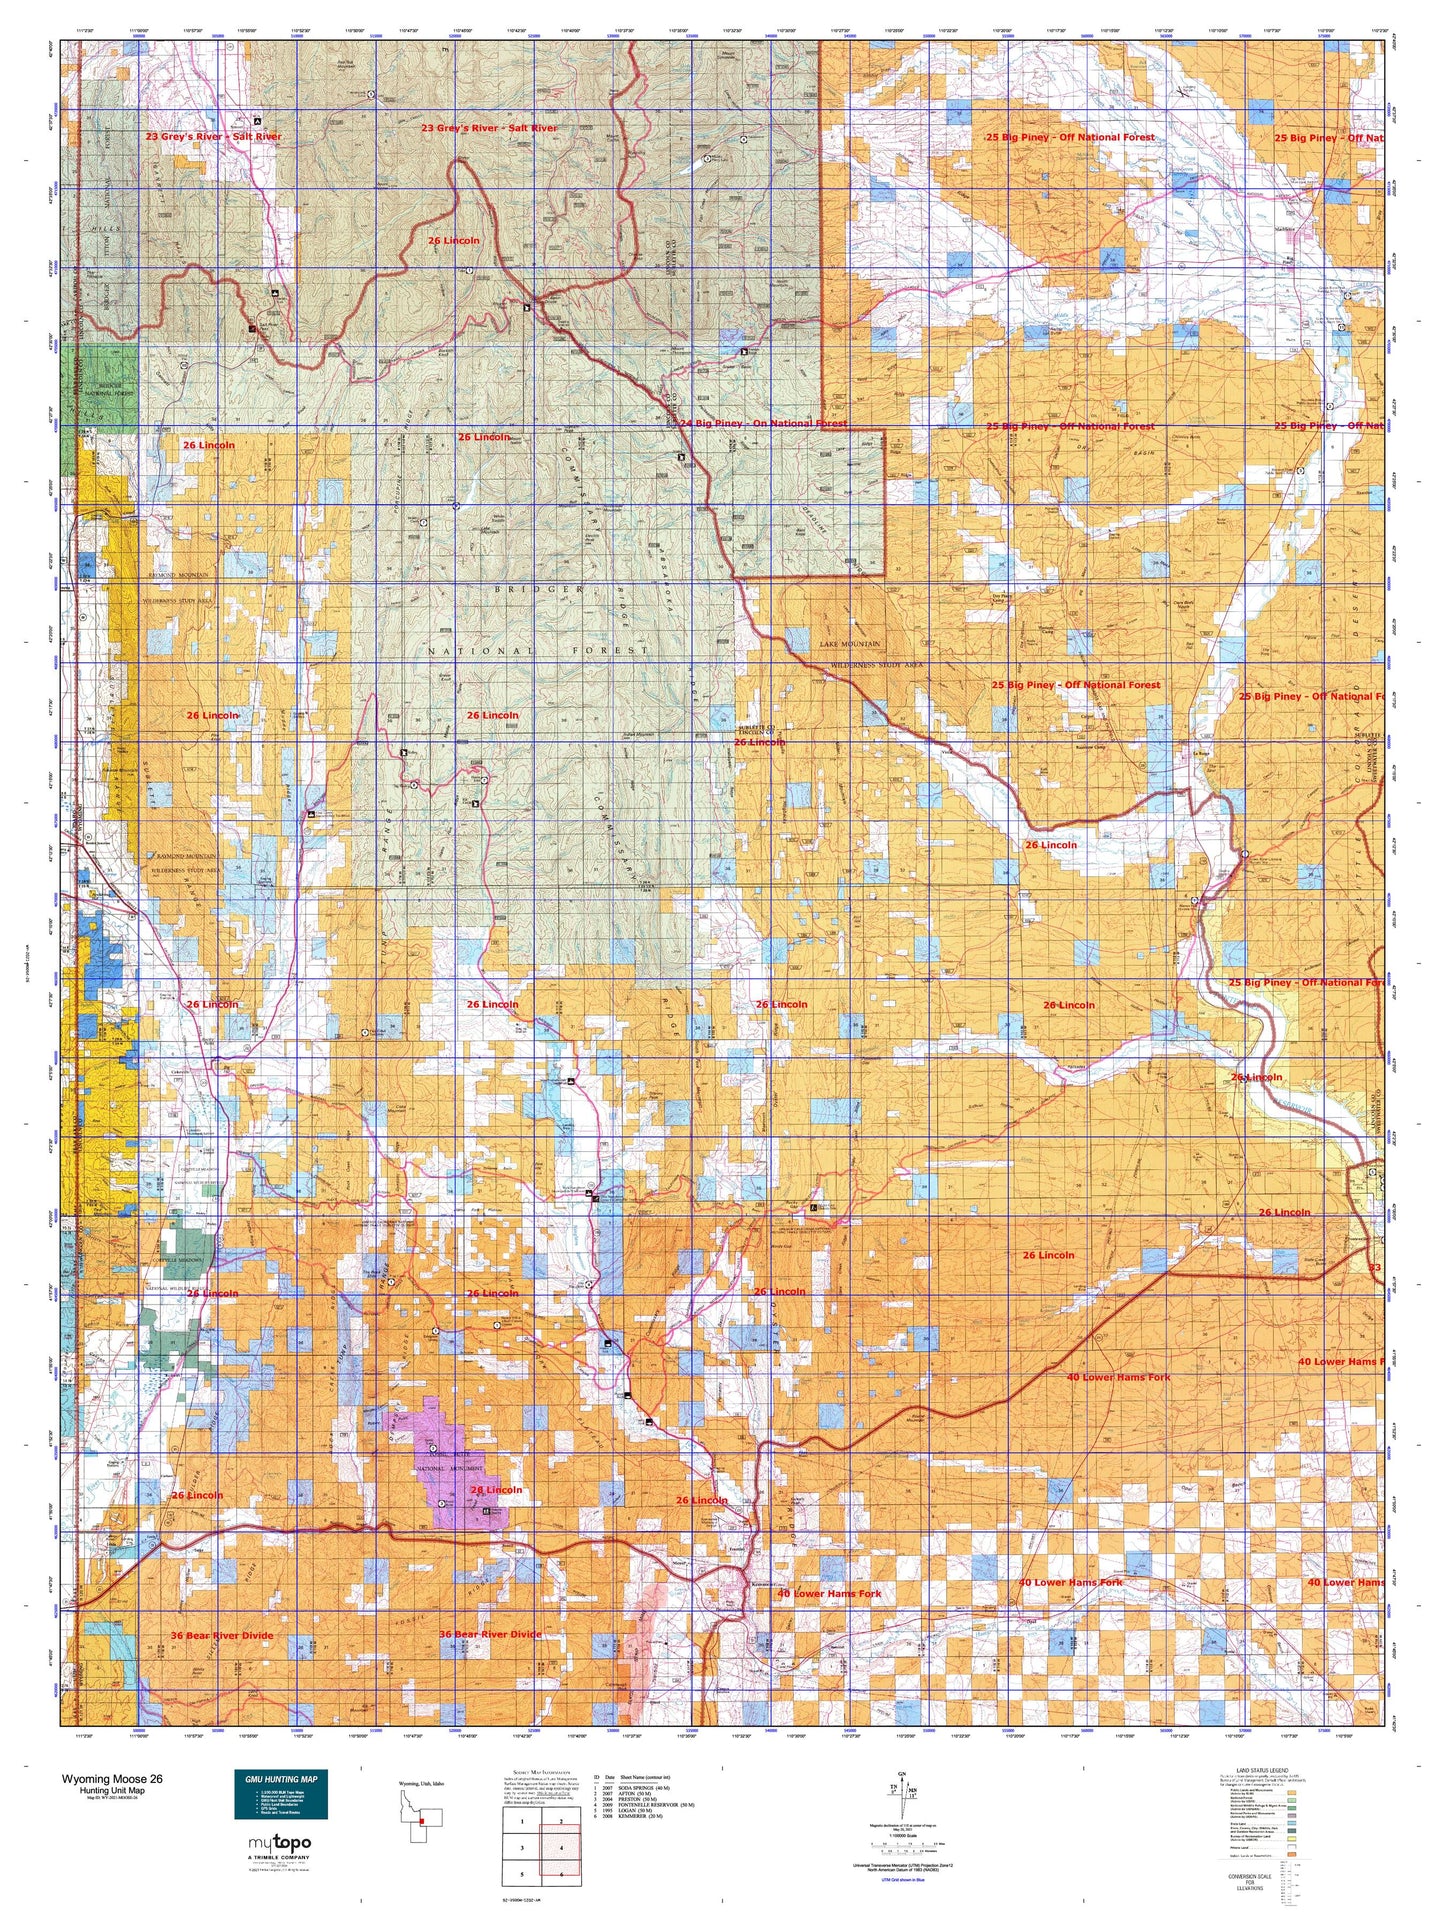 Wyoming Moose 26 Map Image